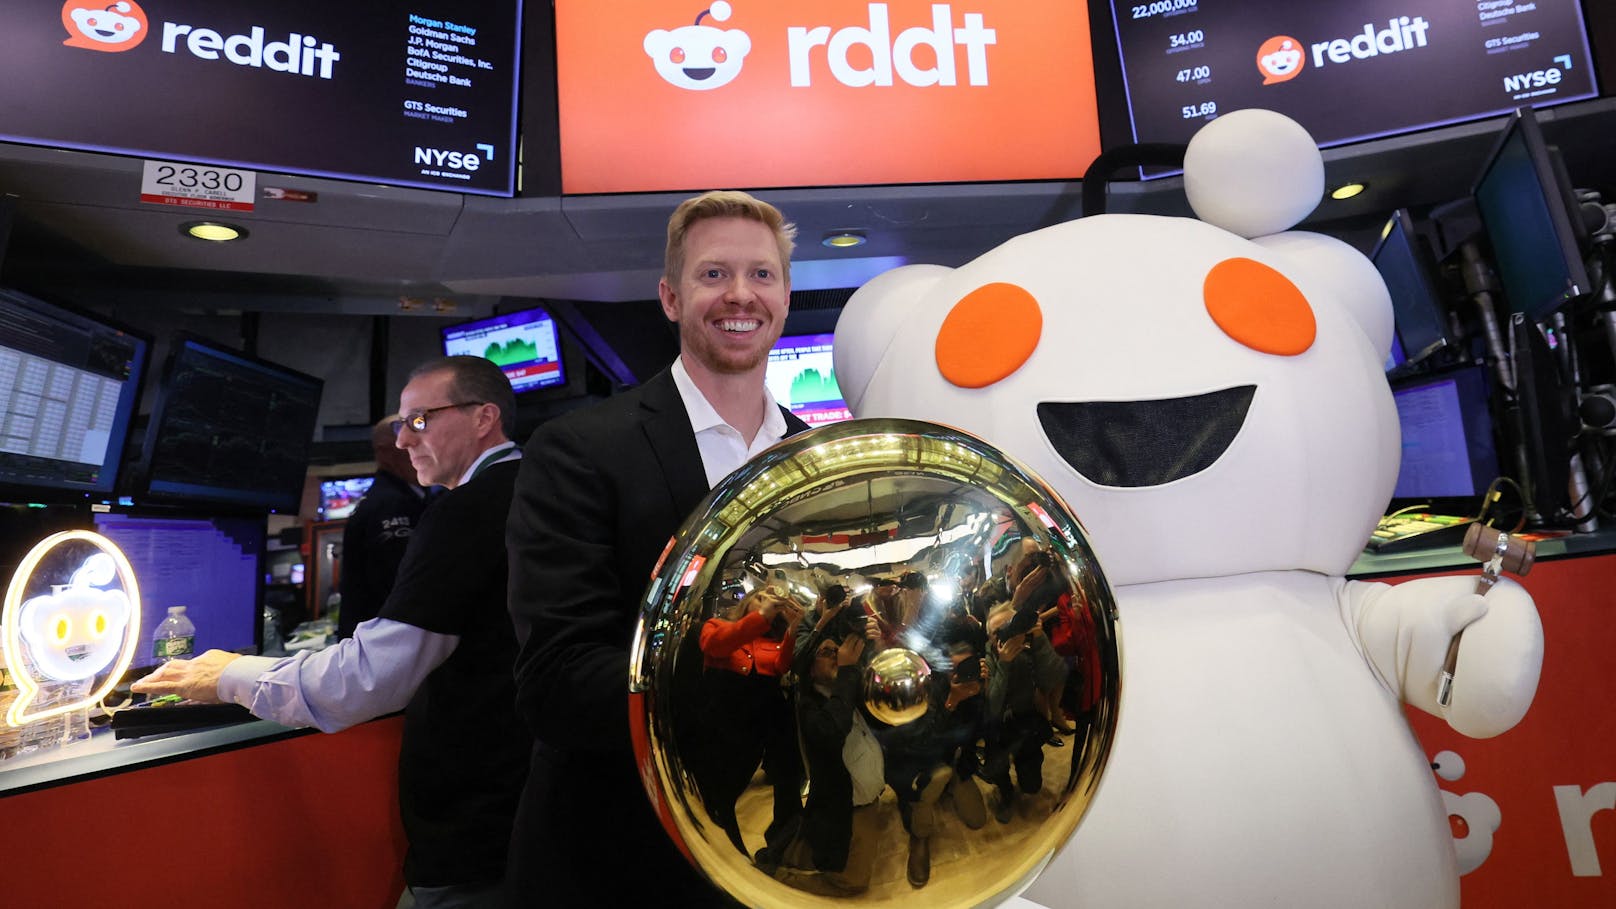 CEO Steve Huffman verdient bei Reddit Millionen, obwohl sein Unternehmen noch nie profitabel war.